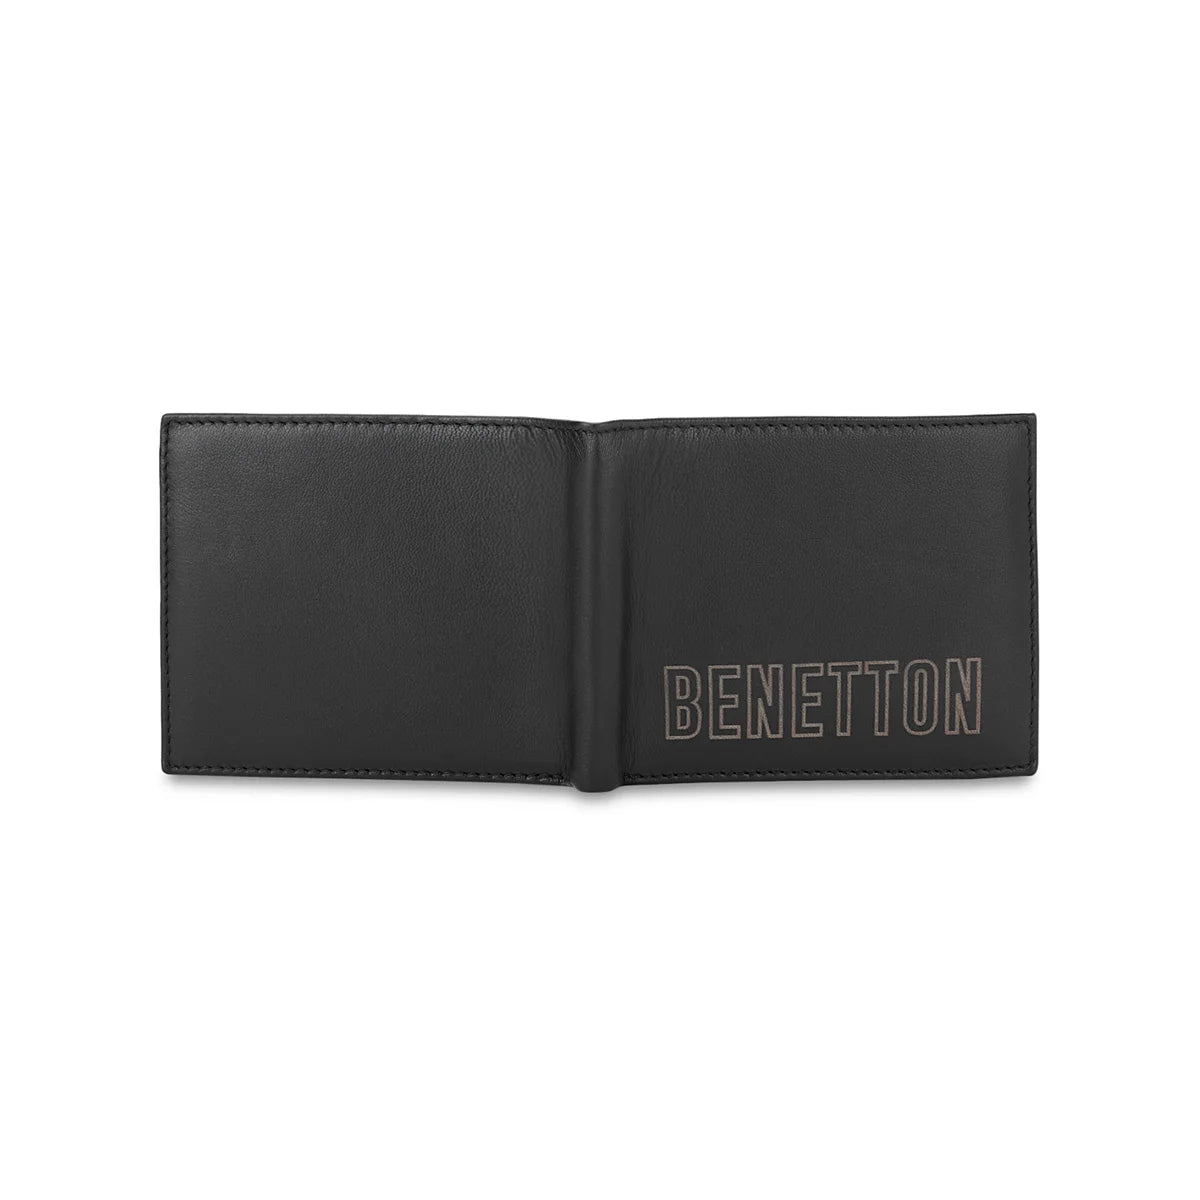 UCB Selik Men's Leather Passcase Wallet Black